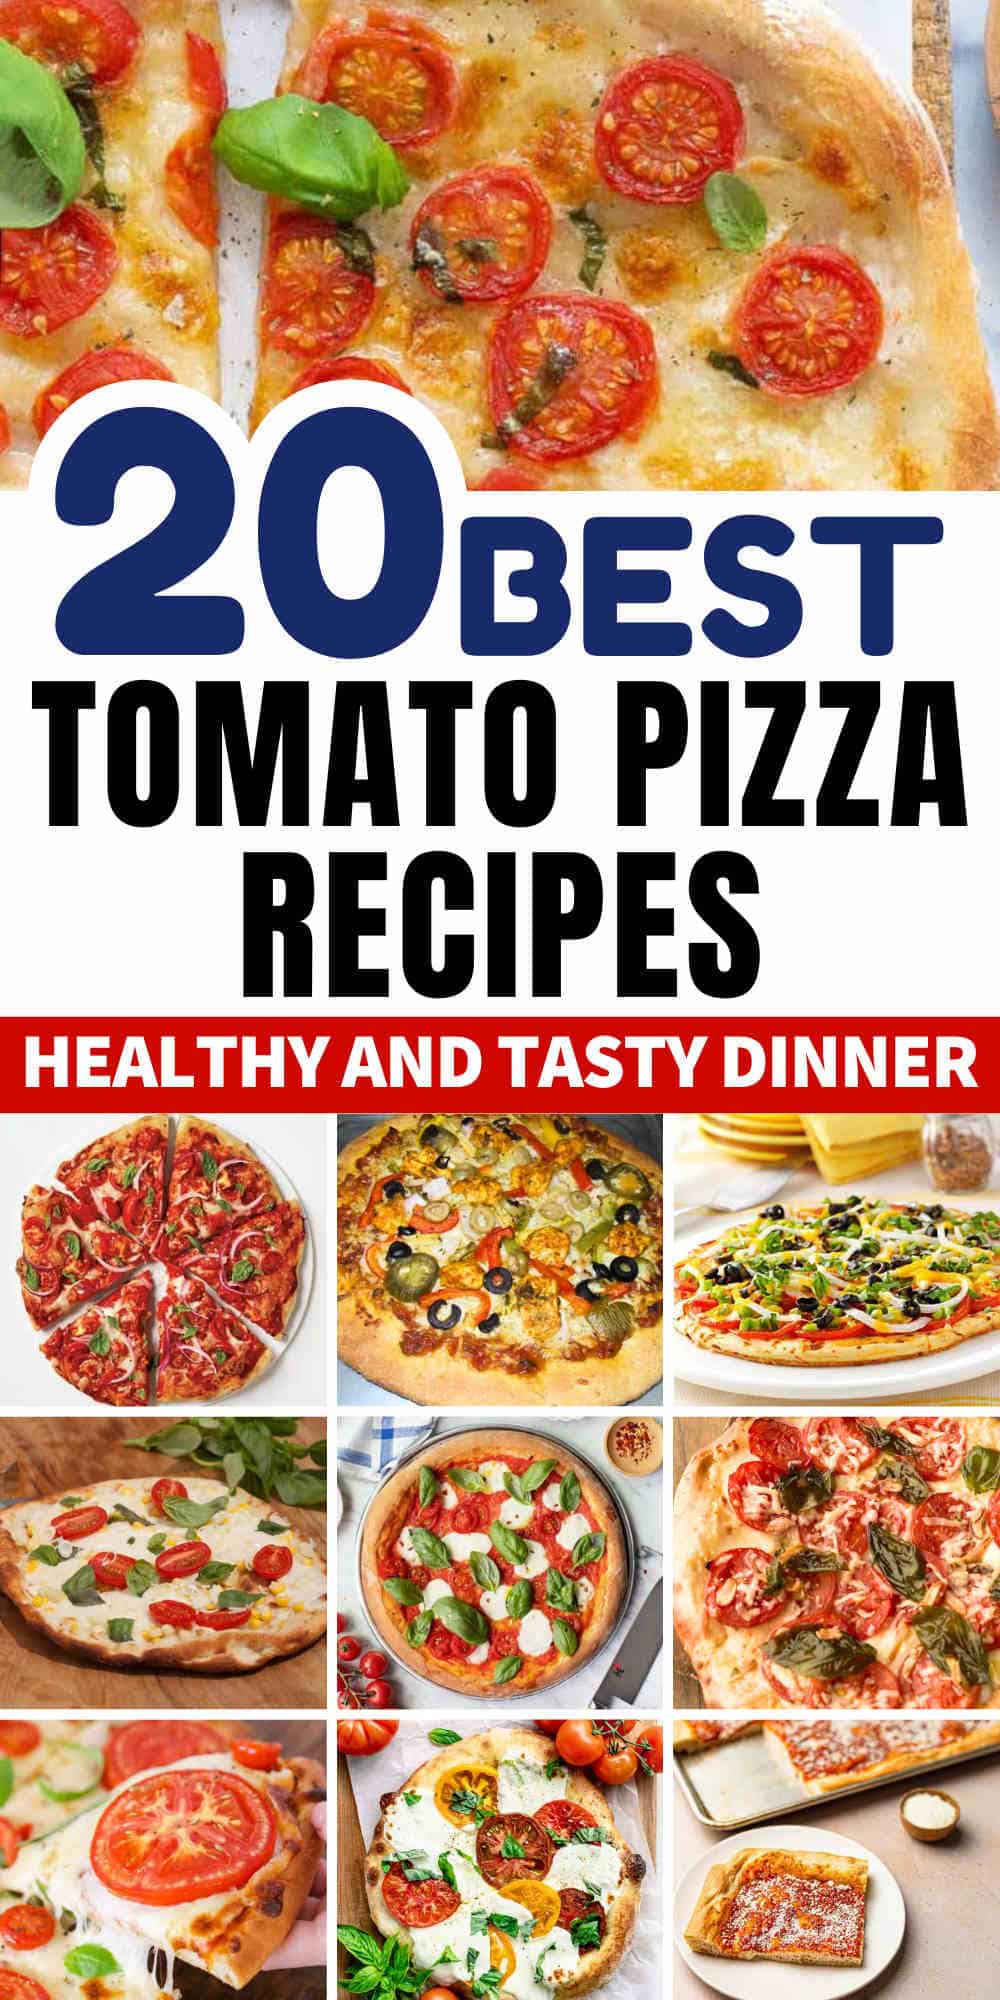 tomato pizza recipes